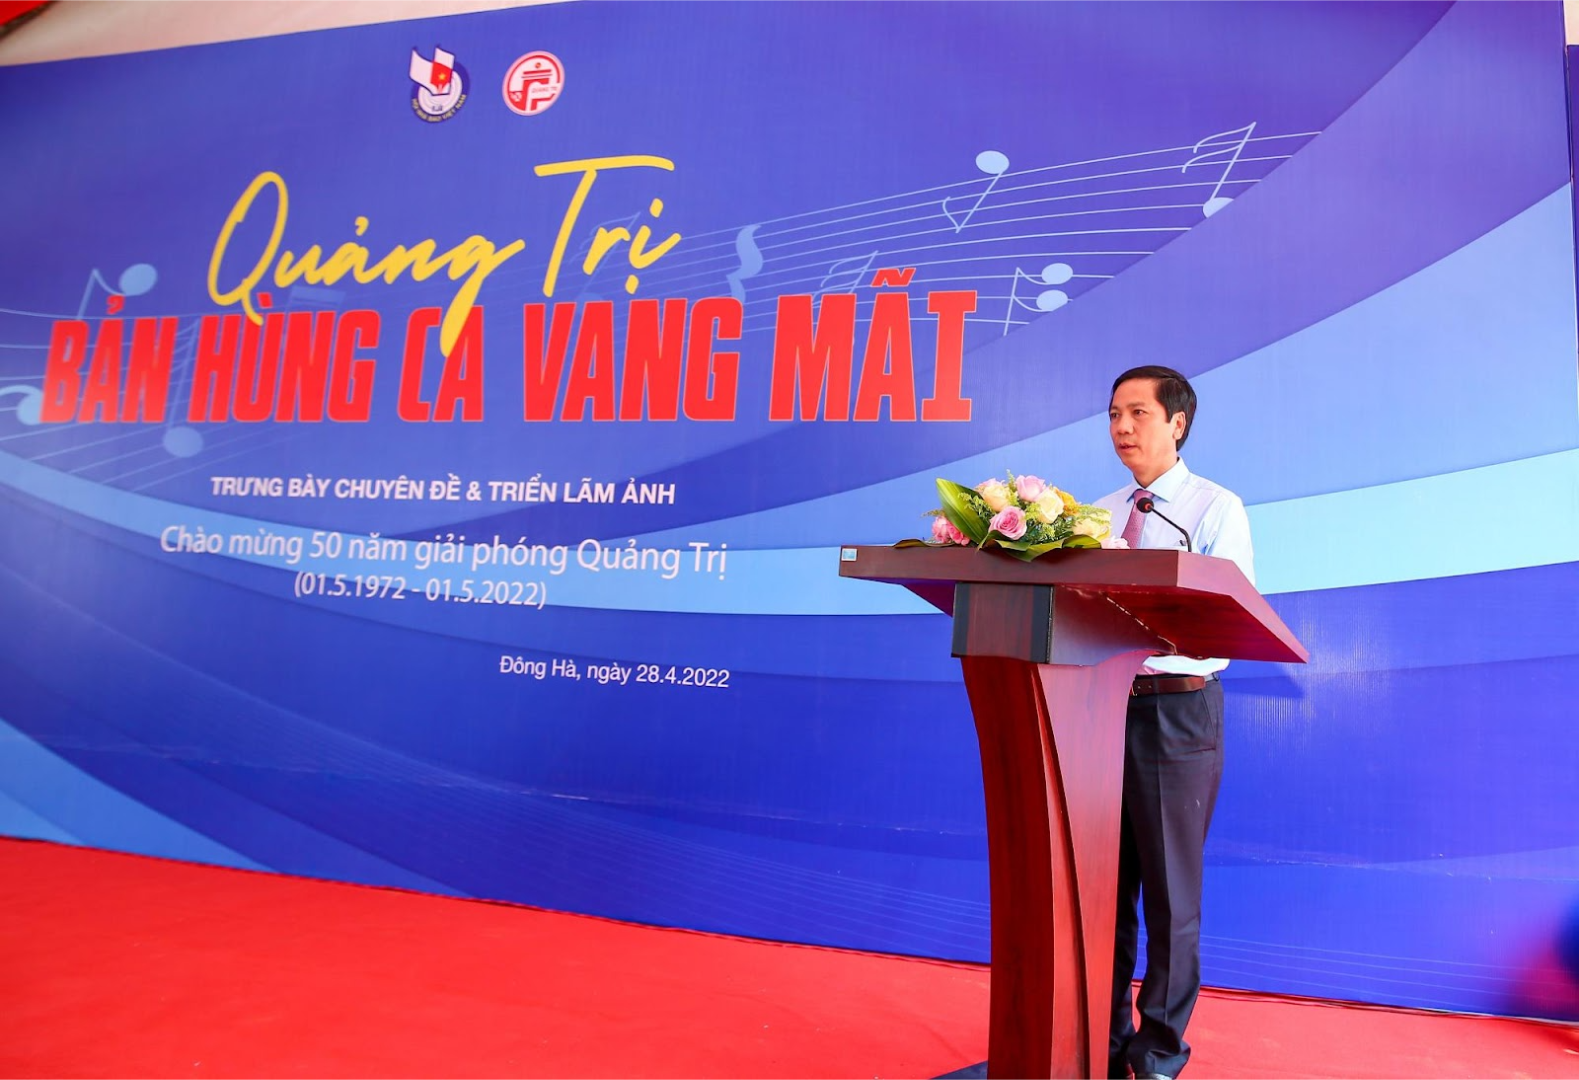 Ông Hoàng Nam – Tỉnh ủy viên, Phó Chủ tịch UBND tỉnh Quảng Trị 
phát biểu chào mừng